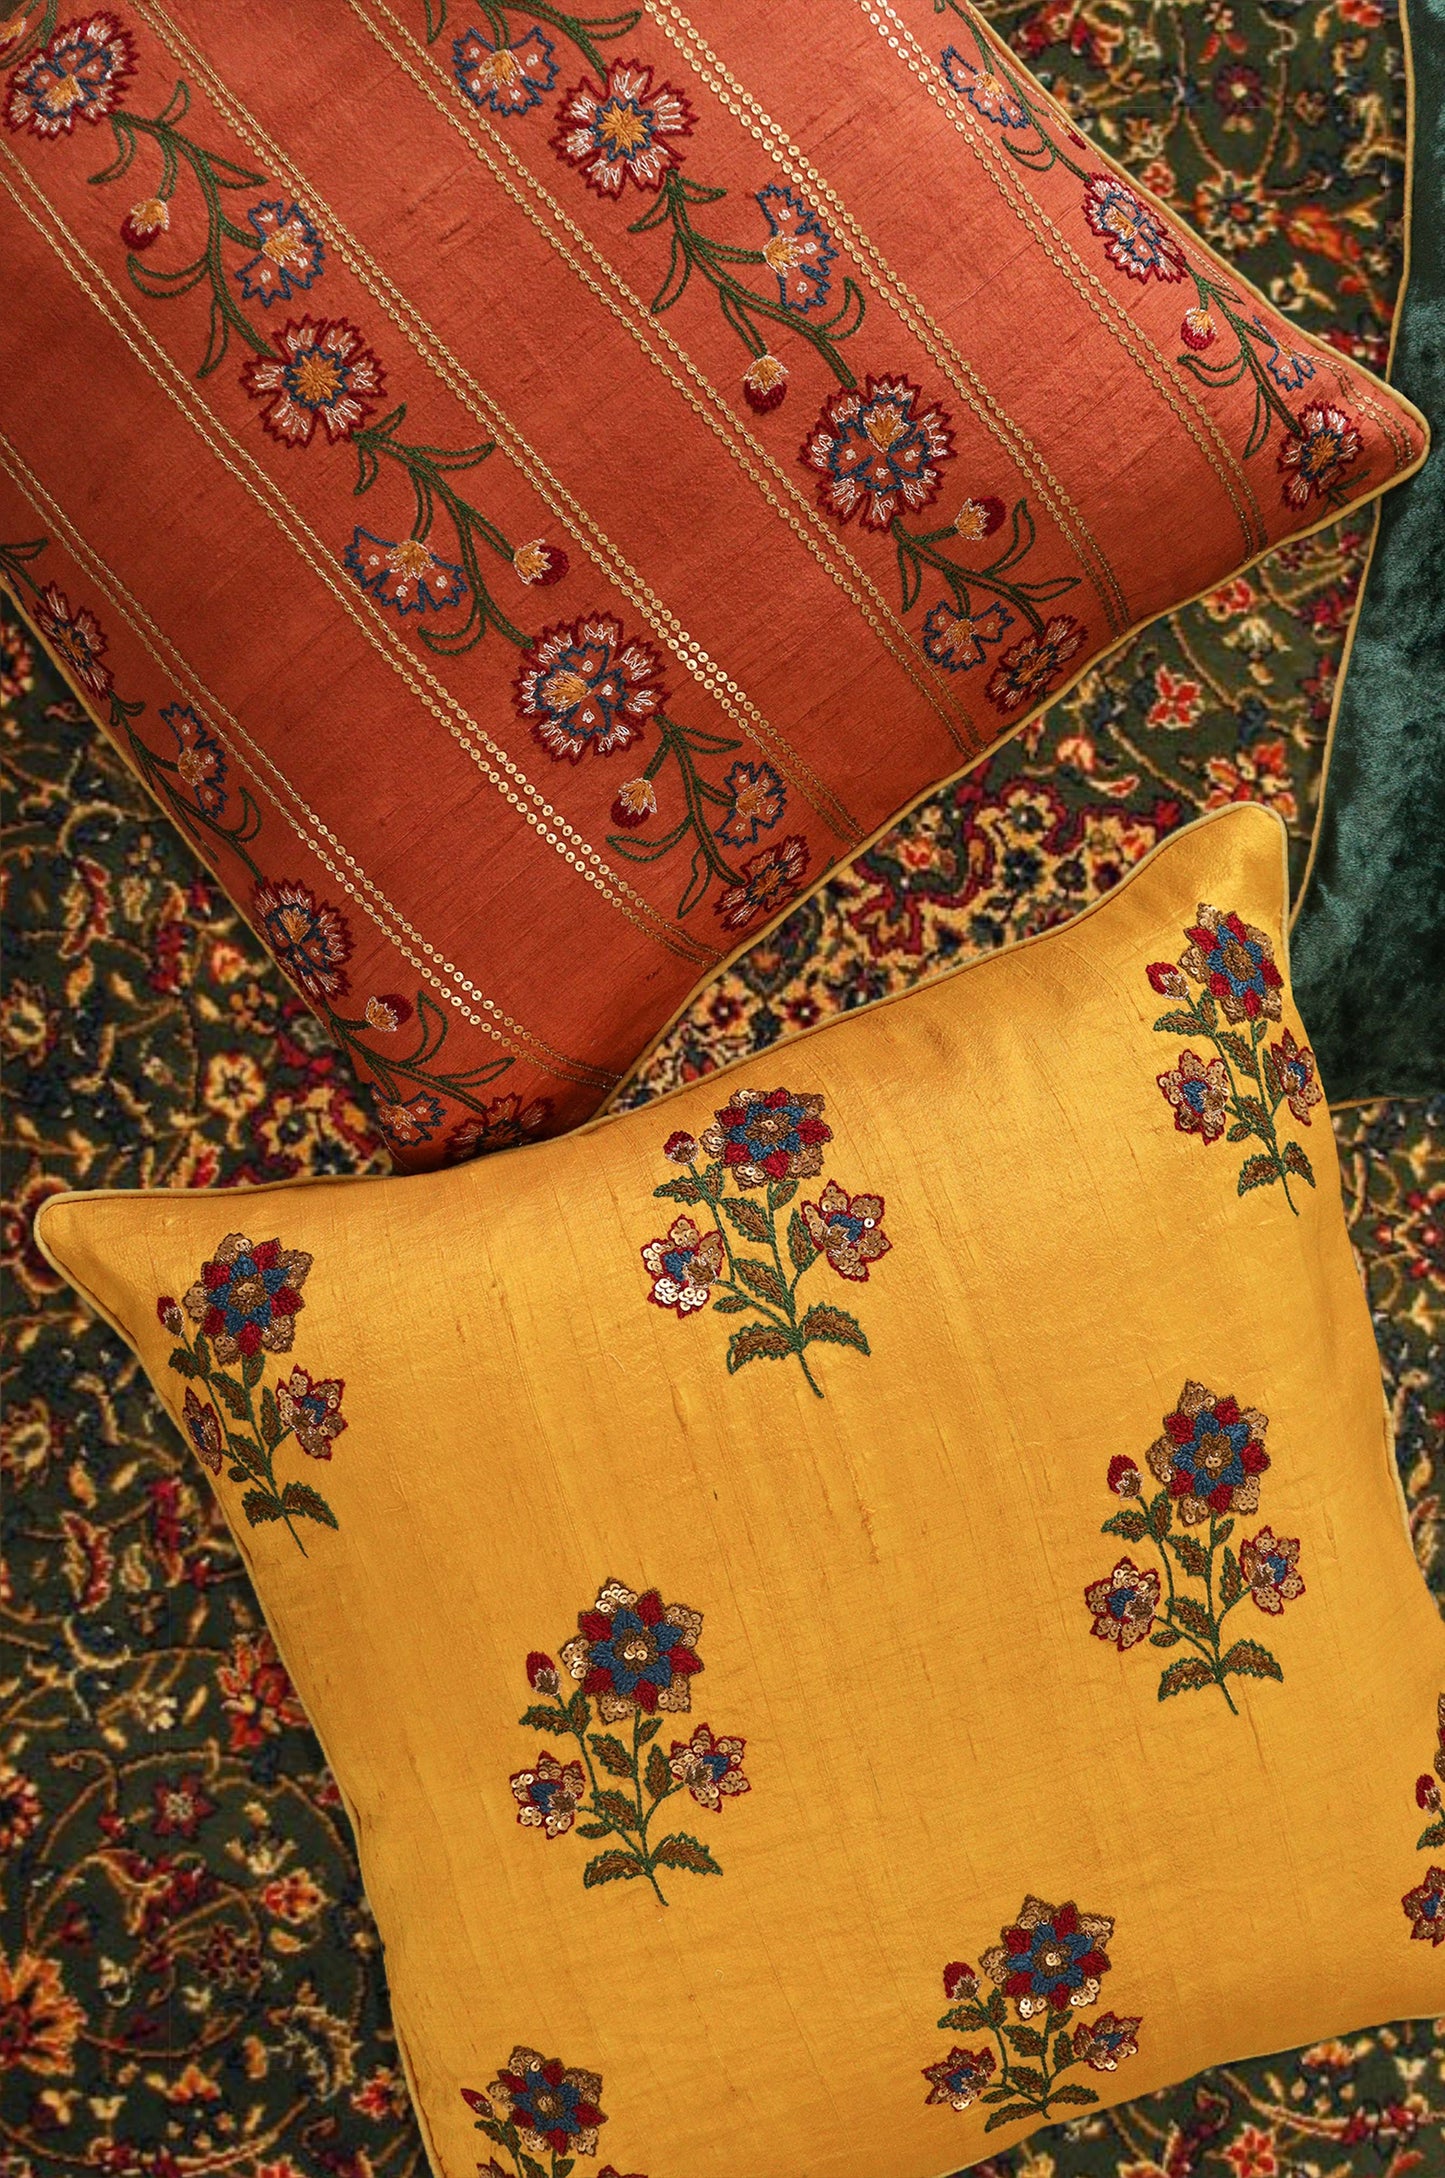 Yellow Gulbaag Silk Cushion